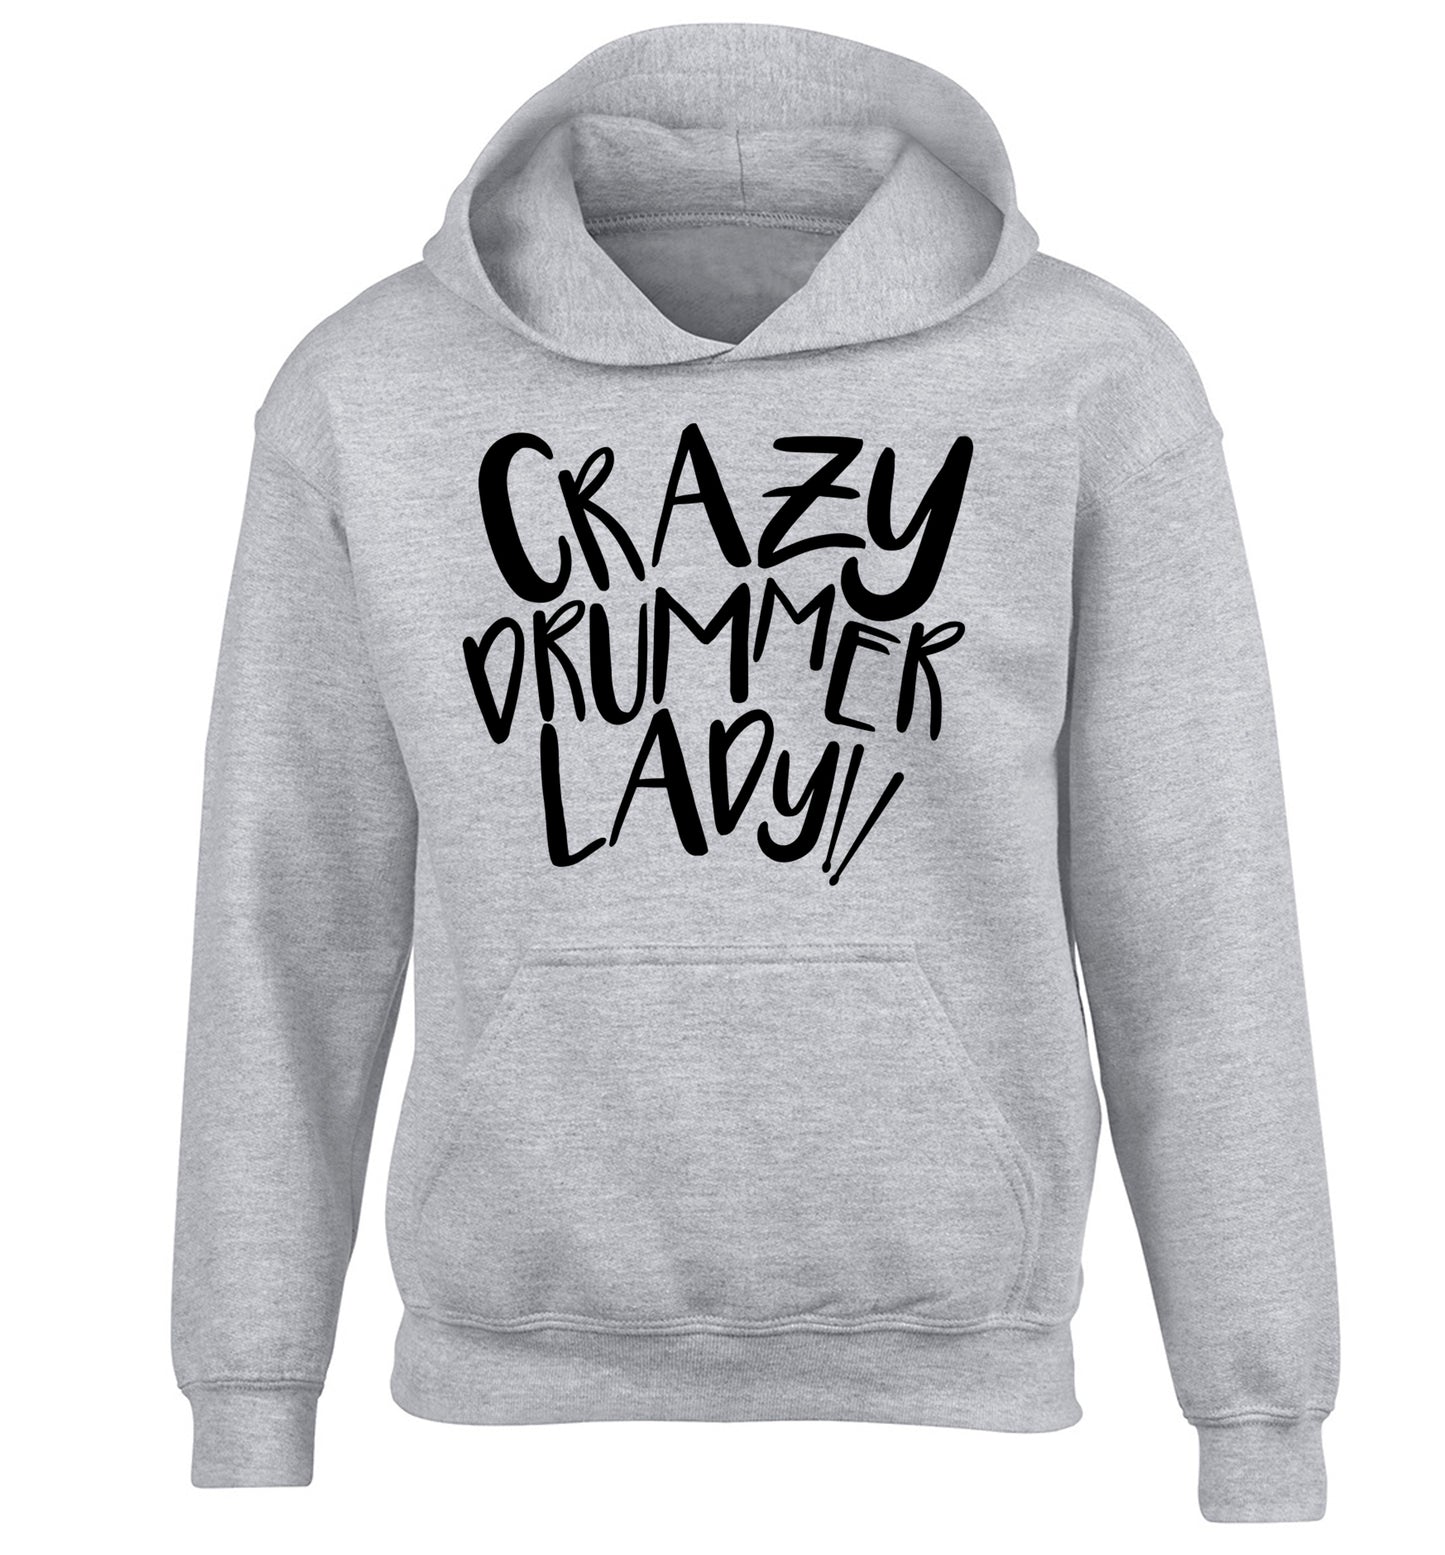 Crazy drummer lady children's grey hoodie 12-14 Years